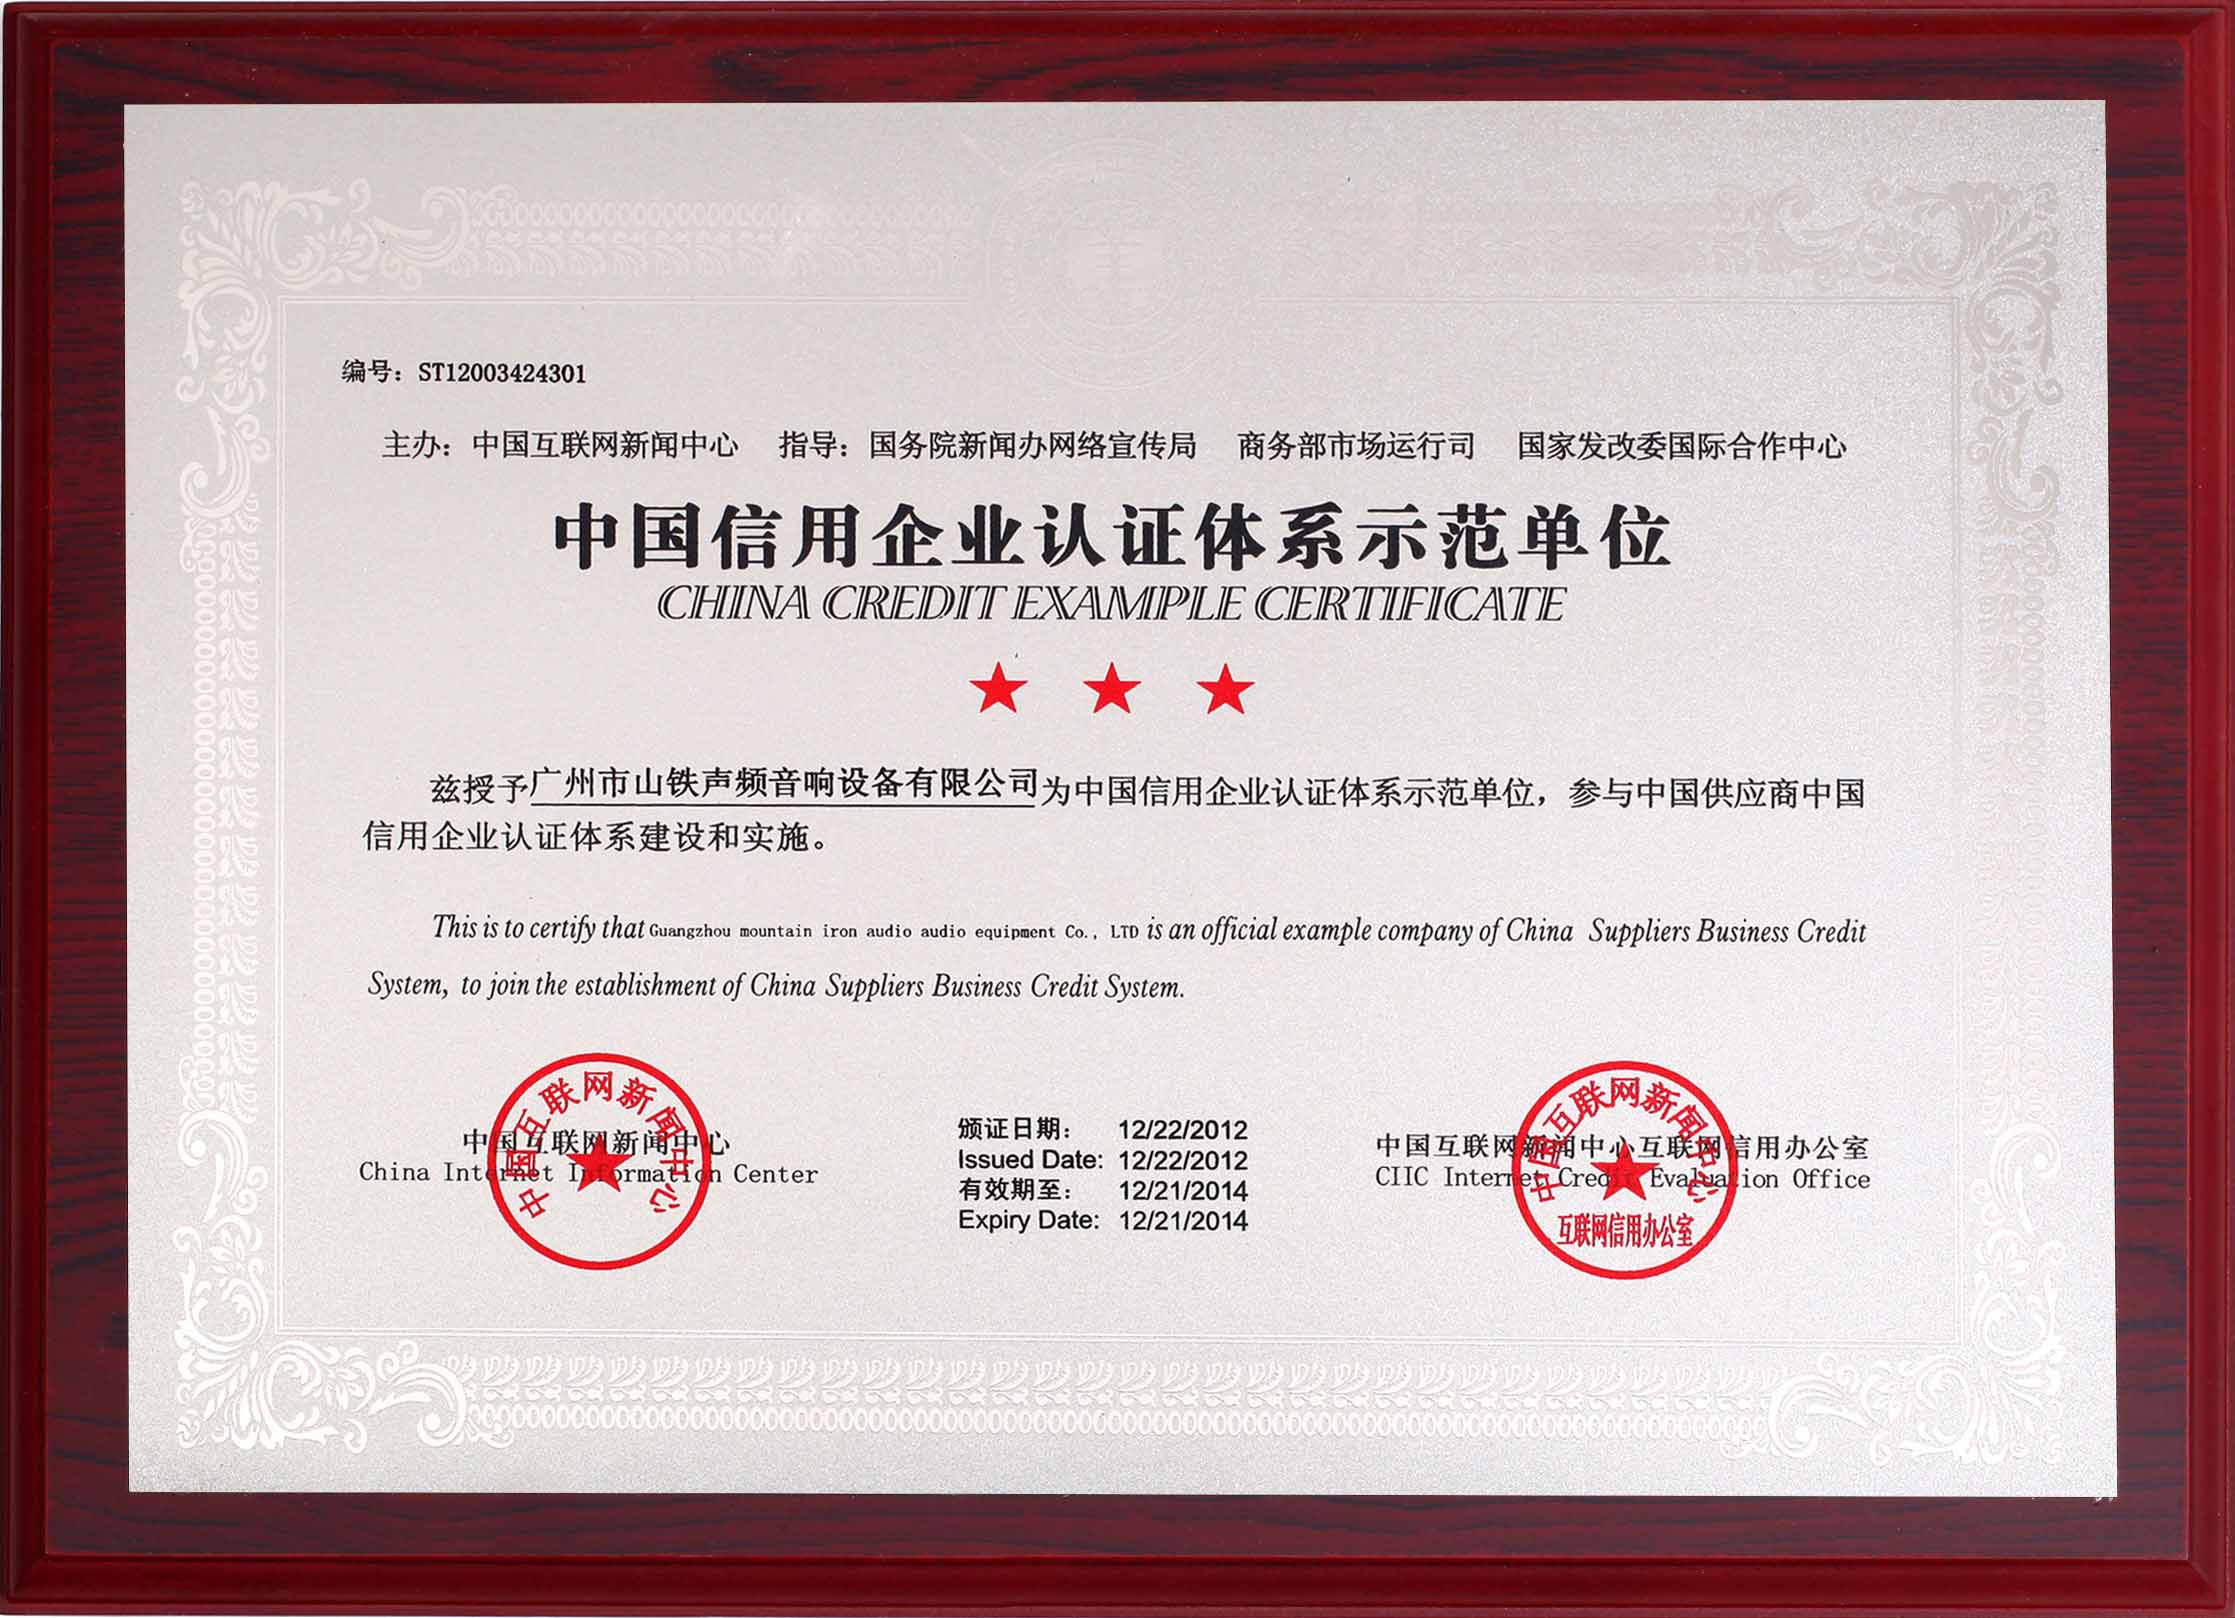 China credit enterprise certification system demonstration unit